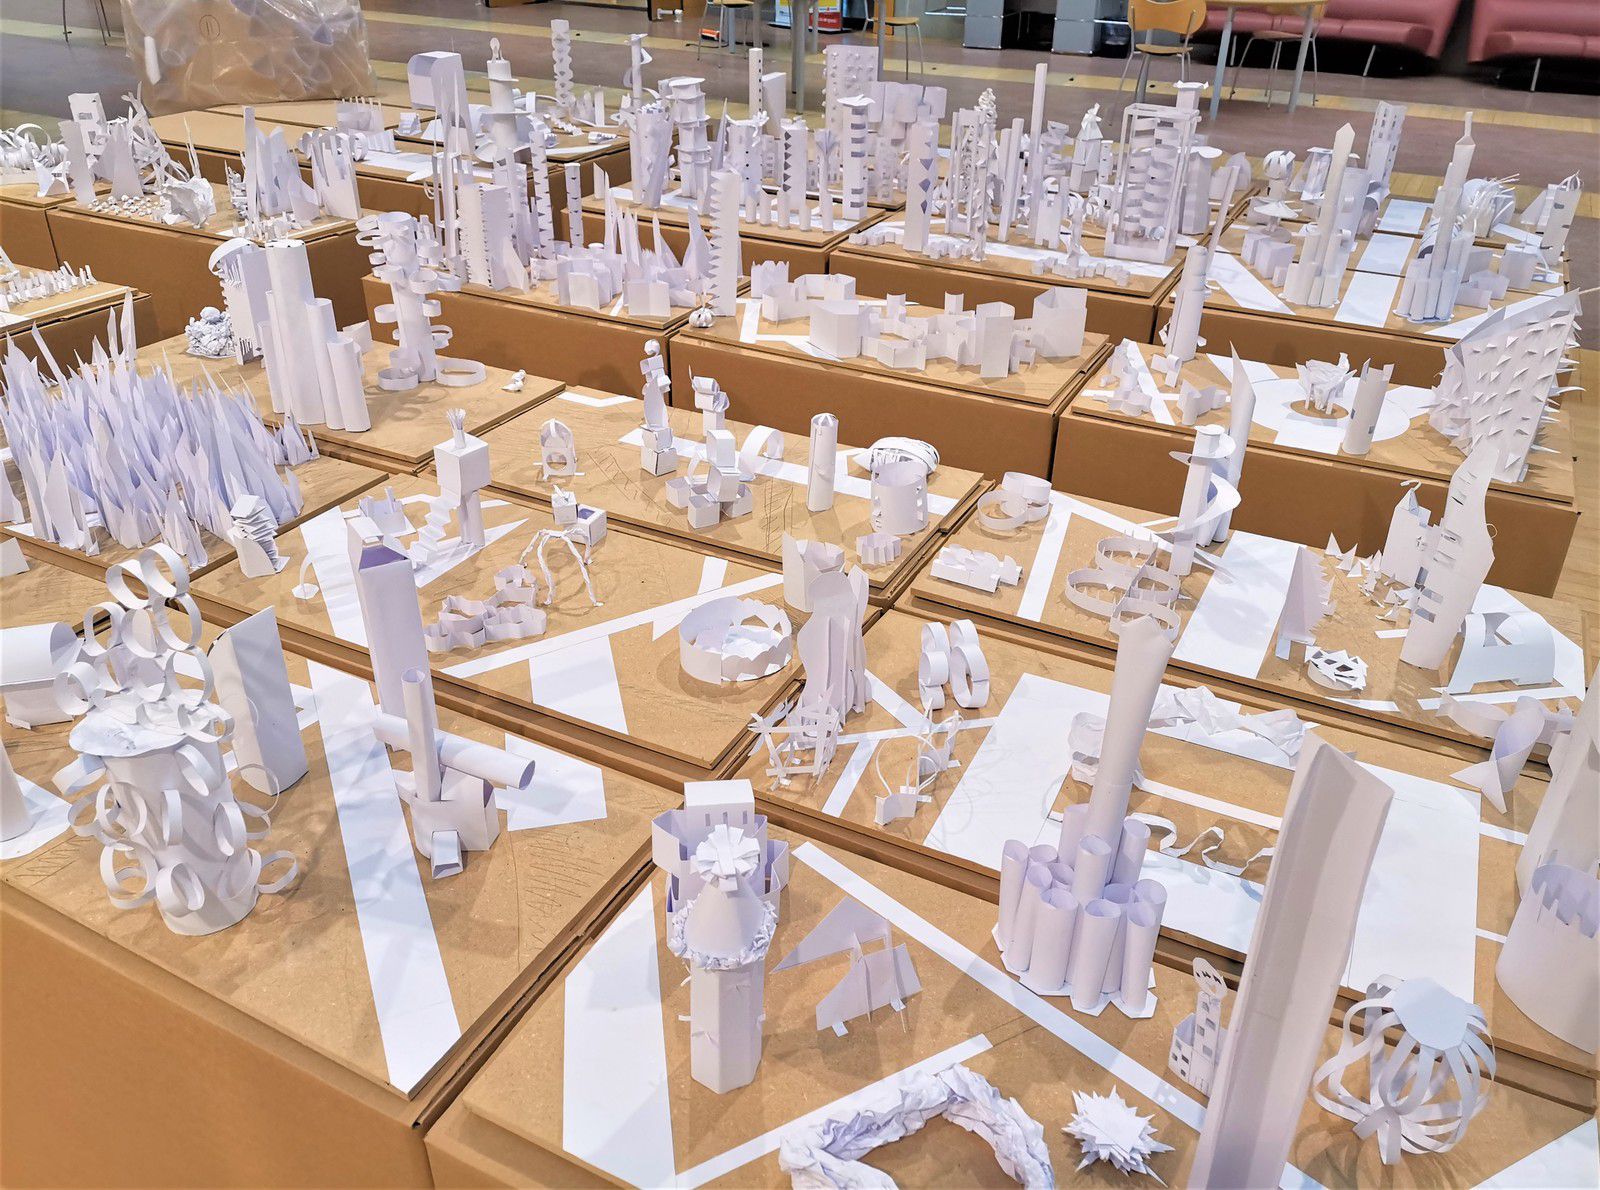 Atelier, exposition Archicity, Parcours d'architecture, 2020 Jocelyn Lermé, Didier Sabarros, médiathèque Marengo Cabanis de Toulouse